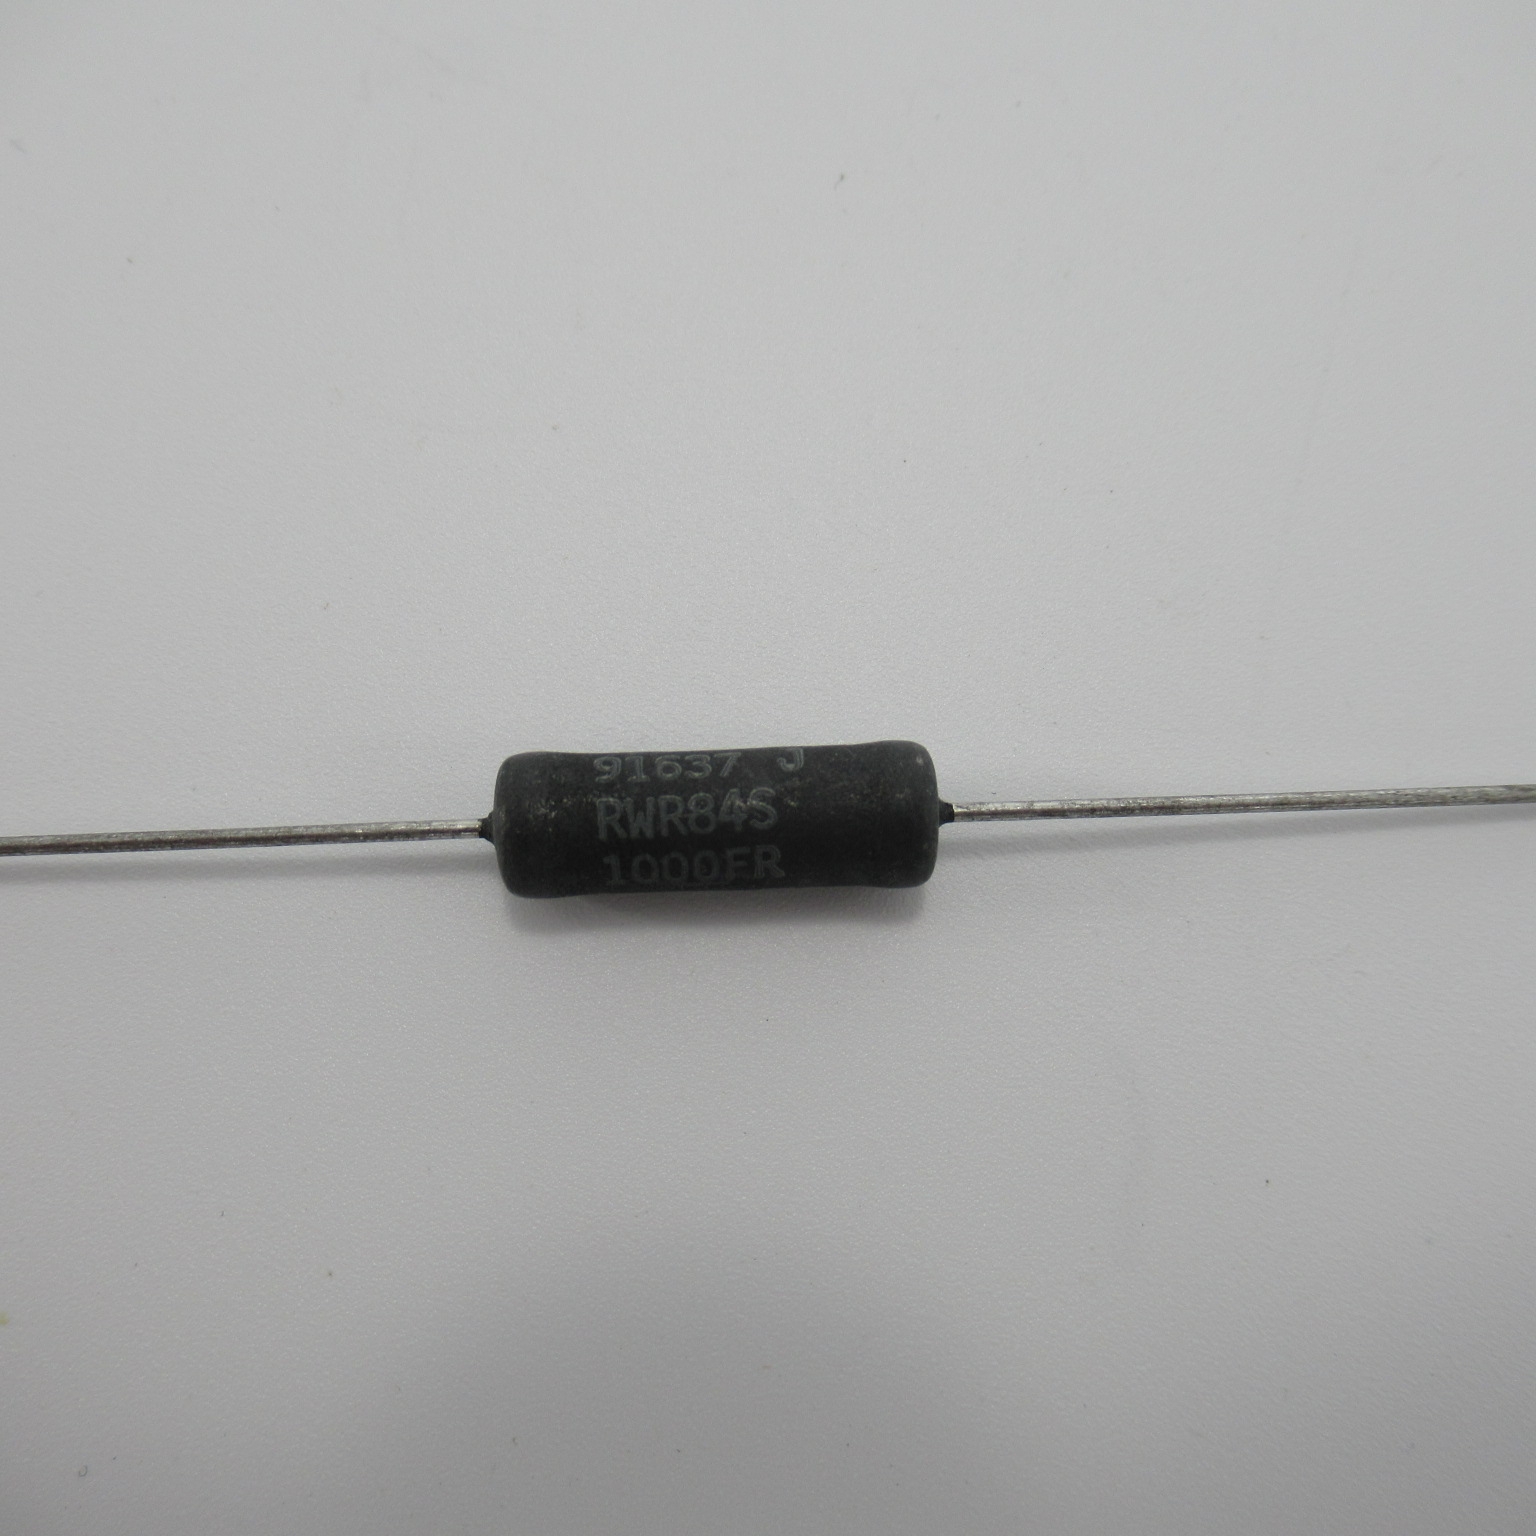 1x RWR84N10R5FR 10R5 1% 7W  Non-Inductive Wirewound Resistors 10.5 ohm